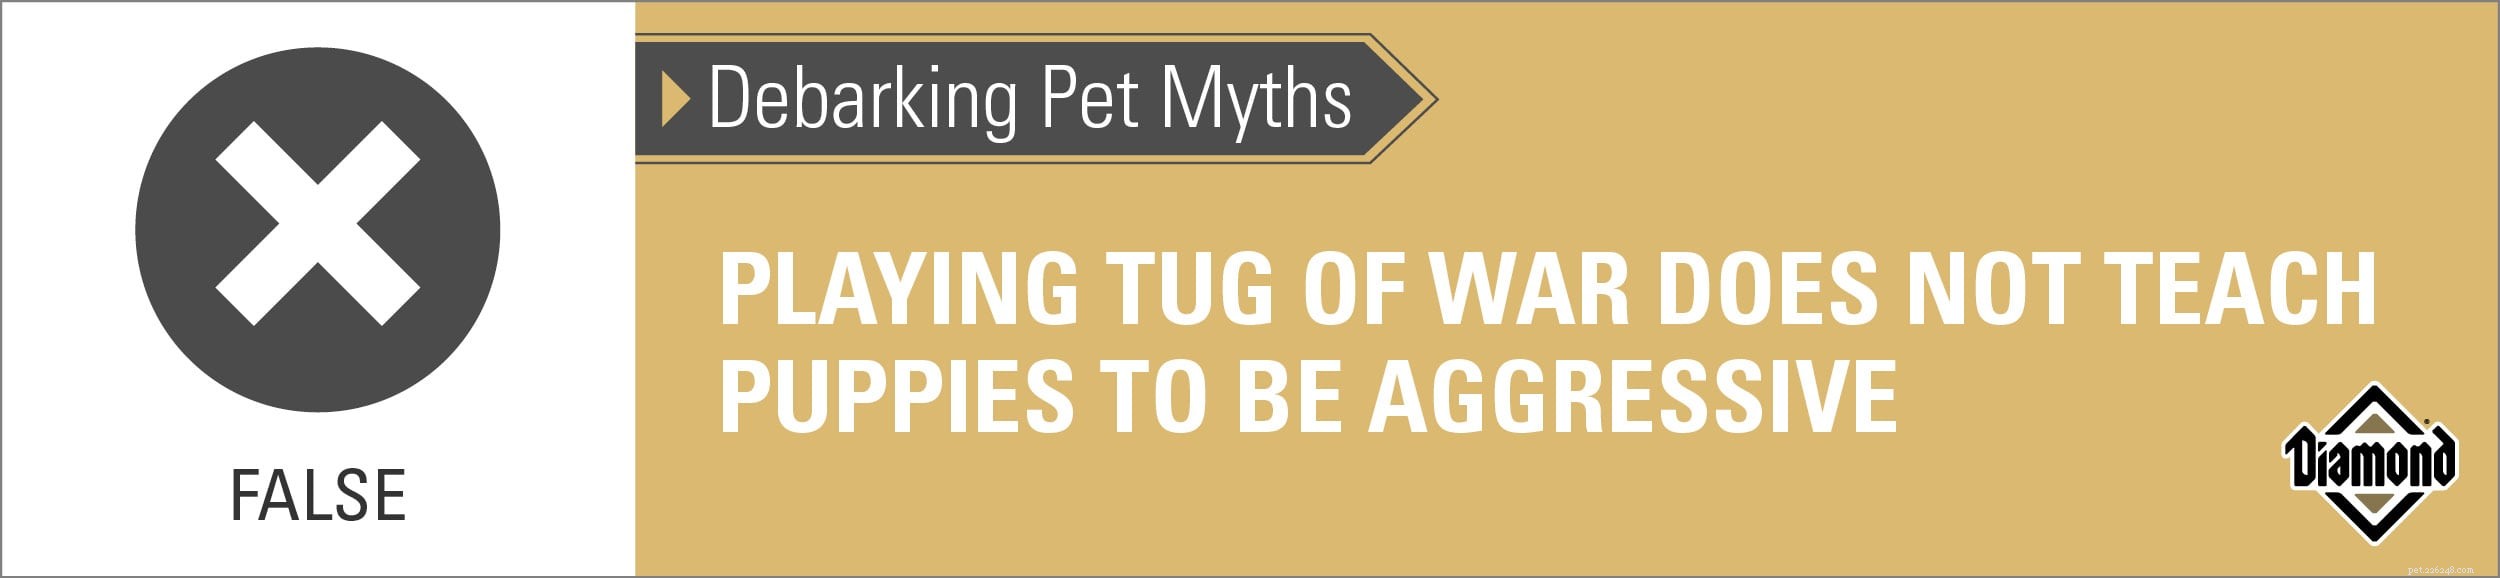 Мифы о окорке домашних животных:вызывает ли агрессию обучение щенков дерганию?